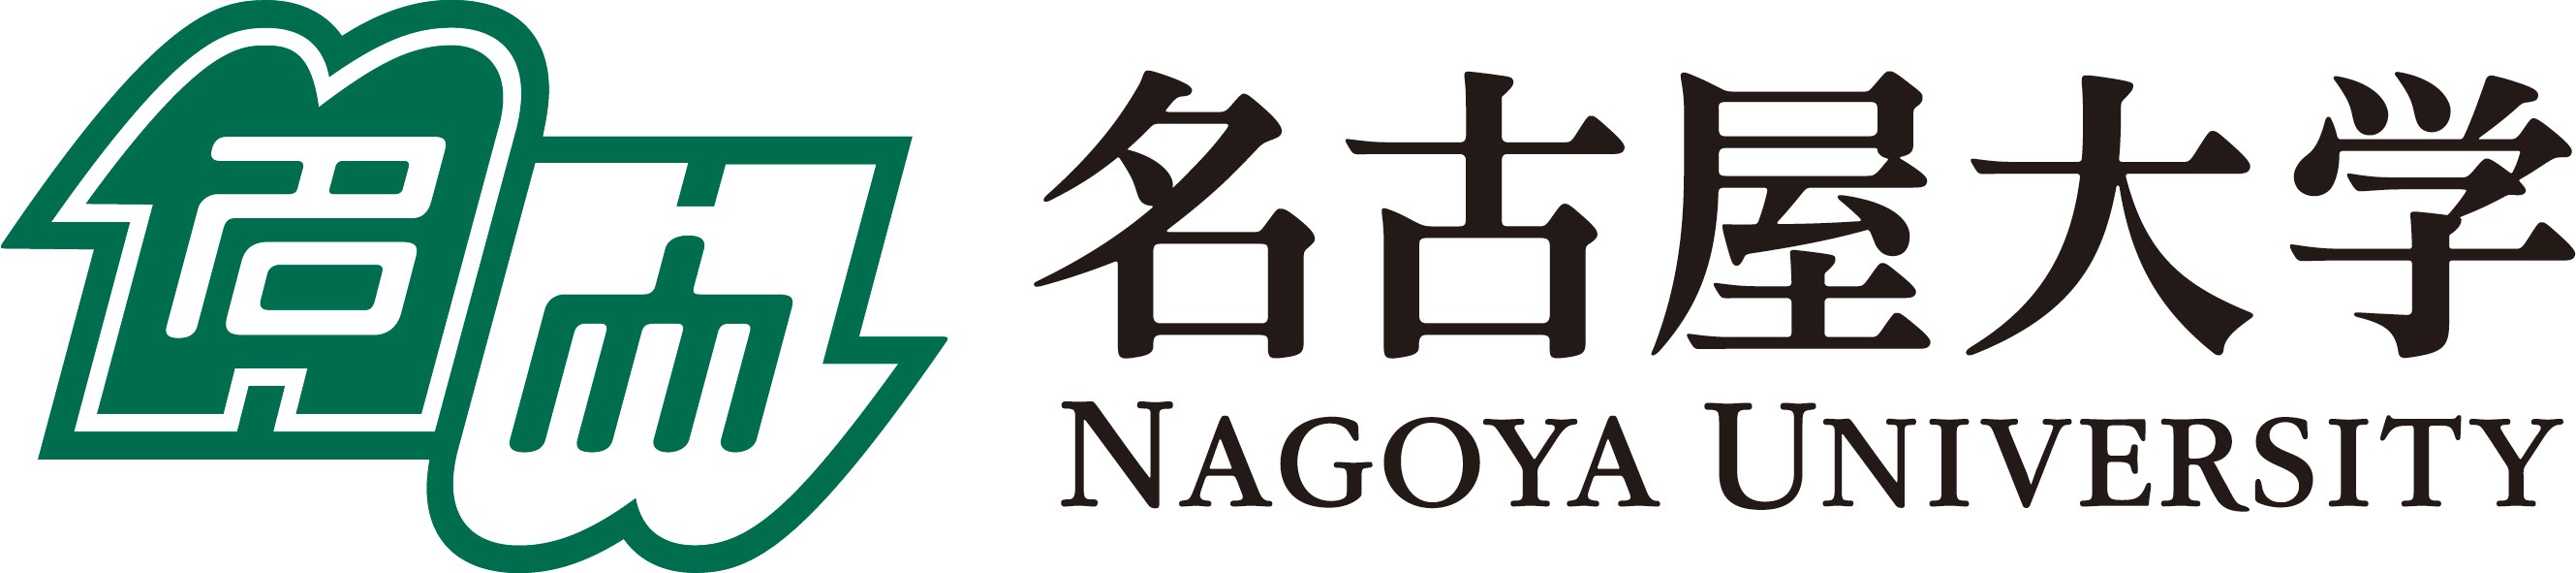 Nagoya university Logos